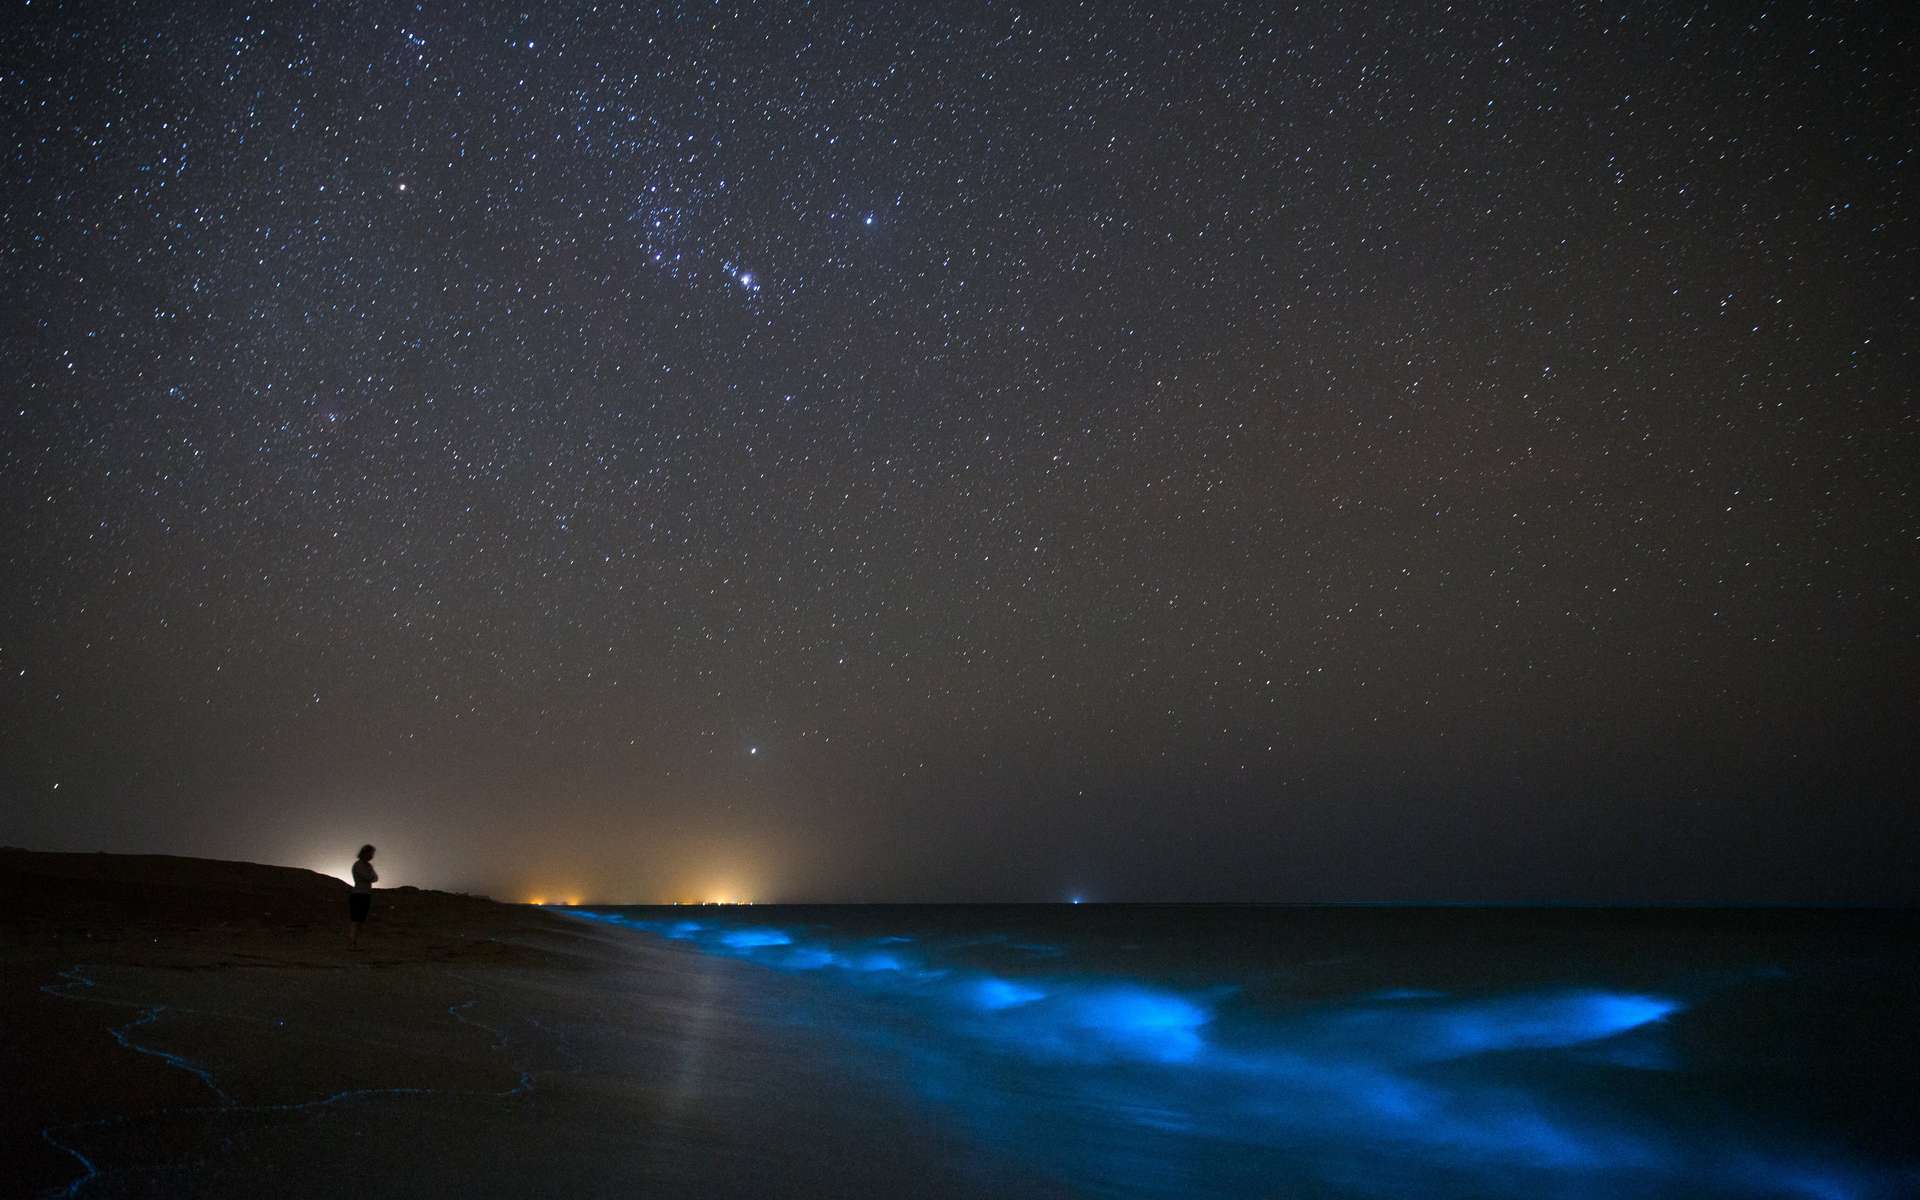 Lautan bioluminescent yang aneh diamati di Indonesia